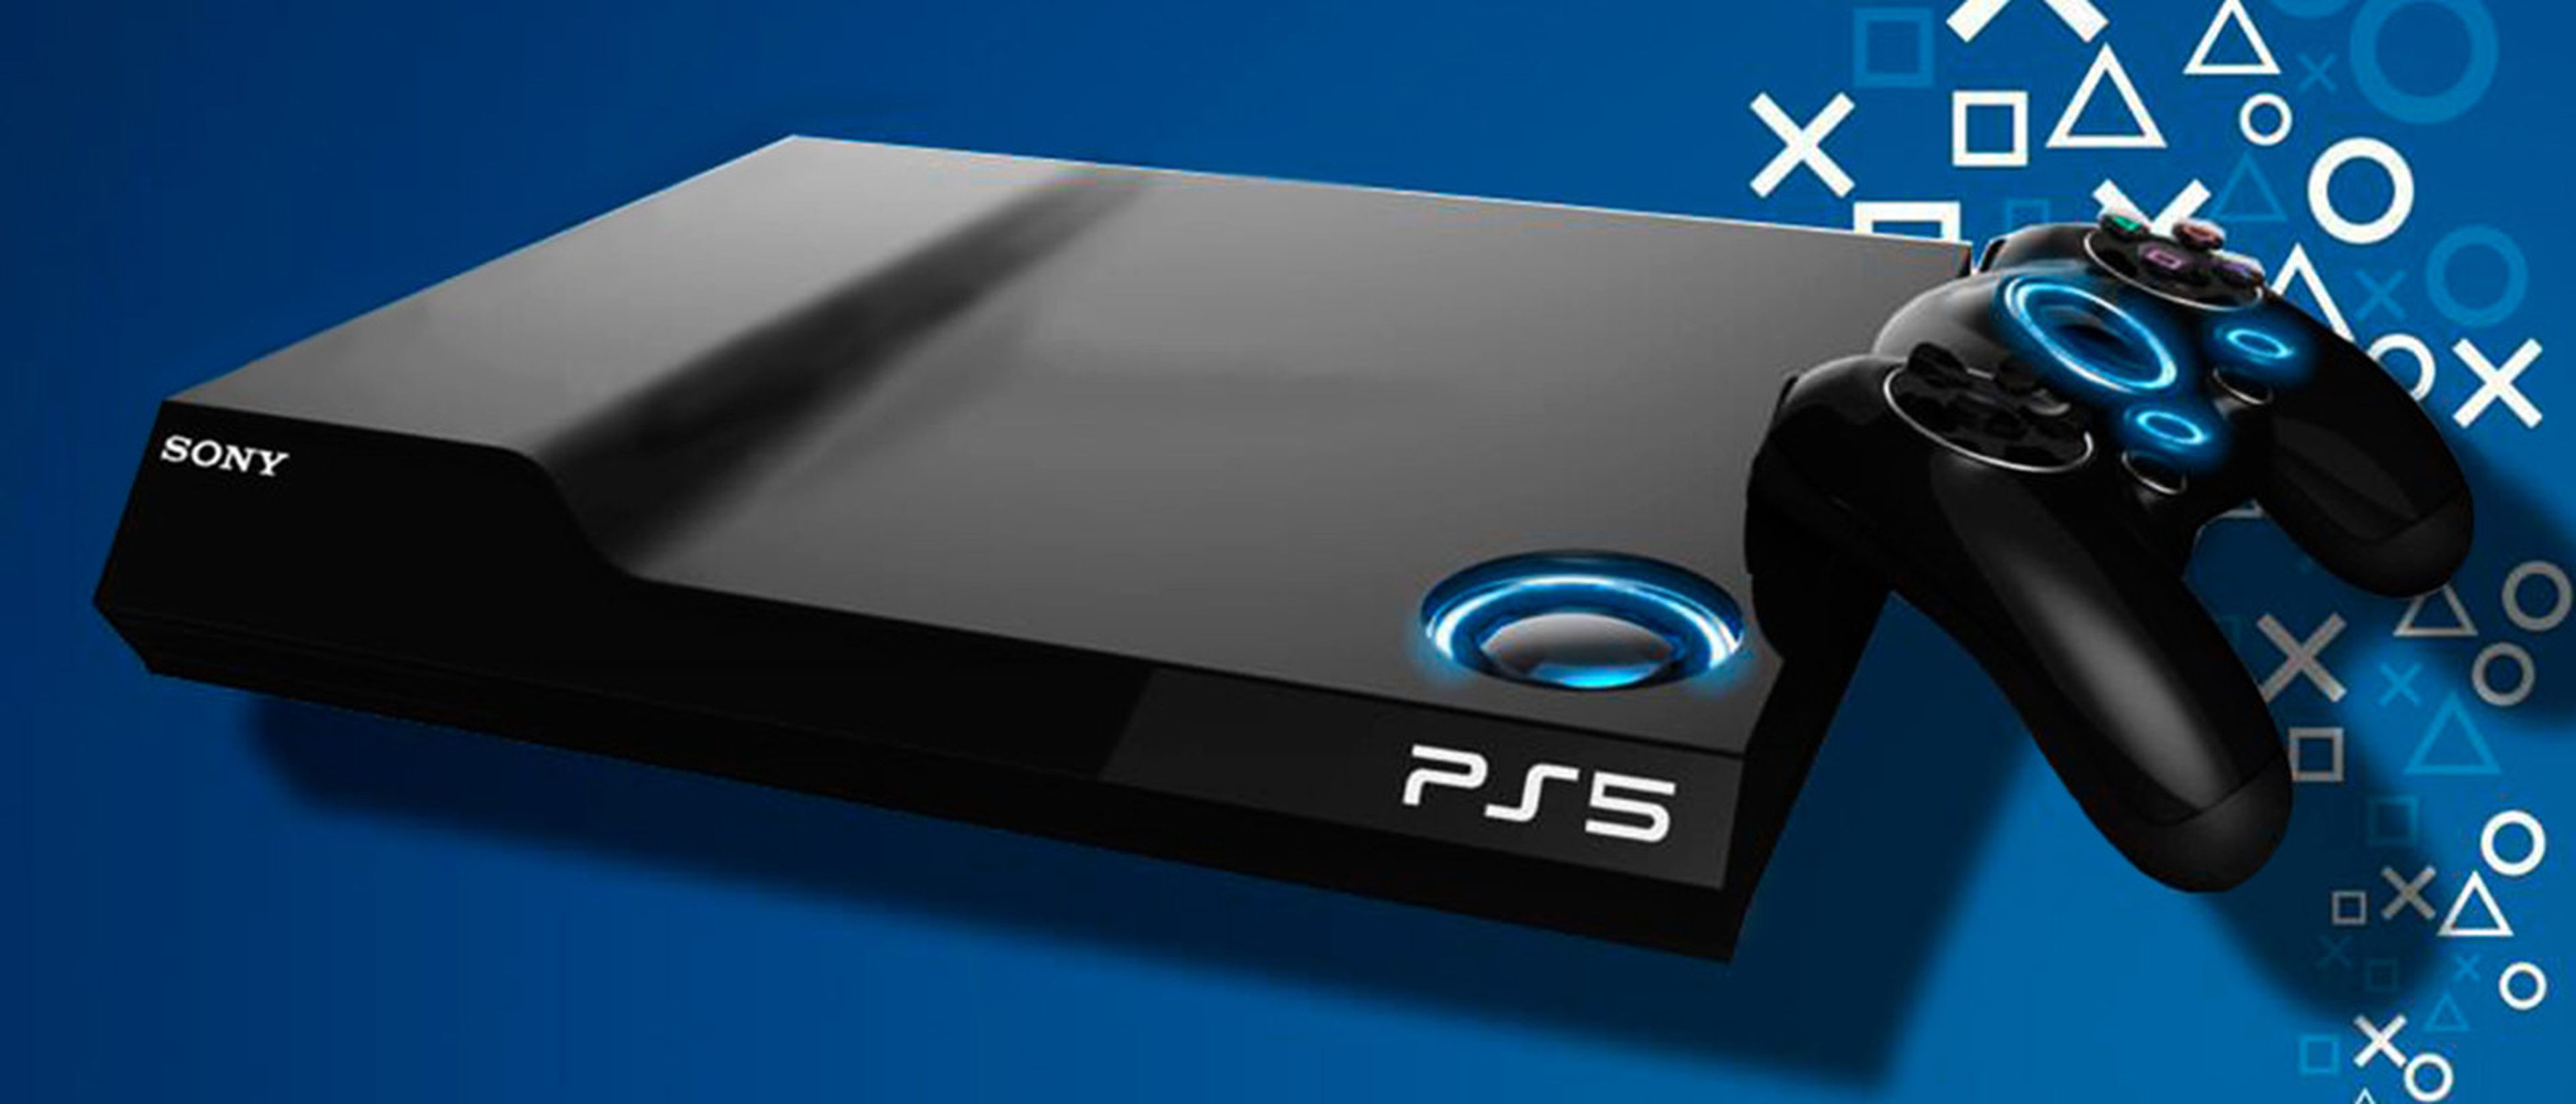 PlayStation 5: primeras impresiones tras probar videojuegos